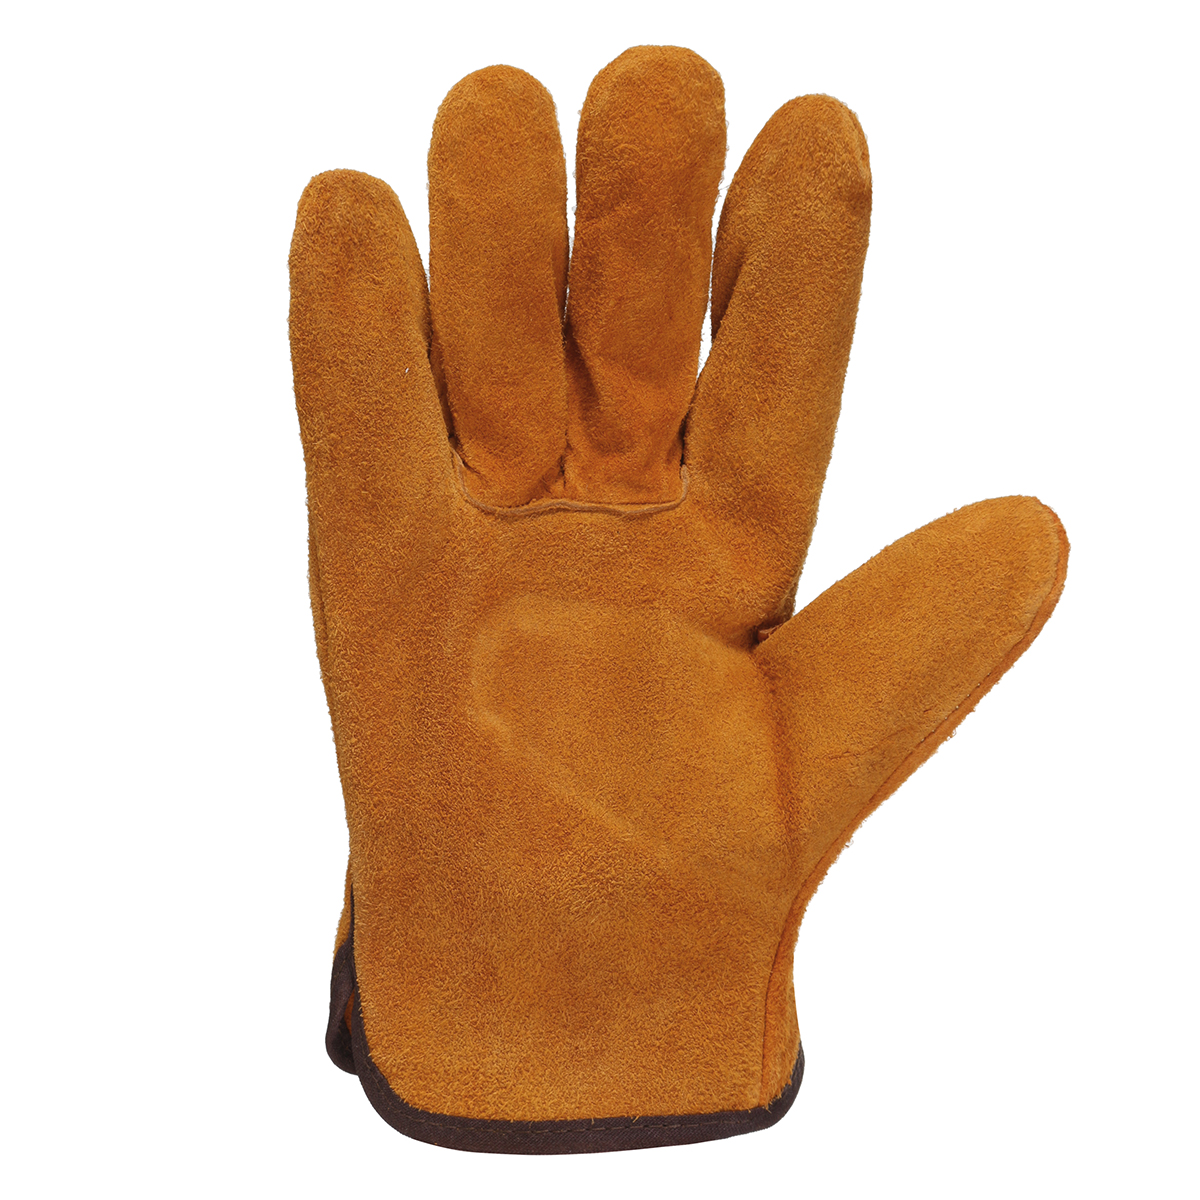 Garden-Gardening-Welder-Gloves-Men-Women-Thorn-Proof-Leather-Work-Gloves-Yellow-1630104-6